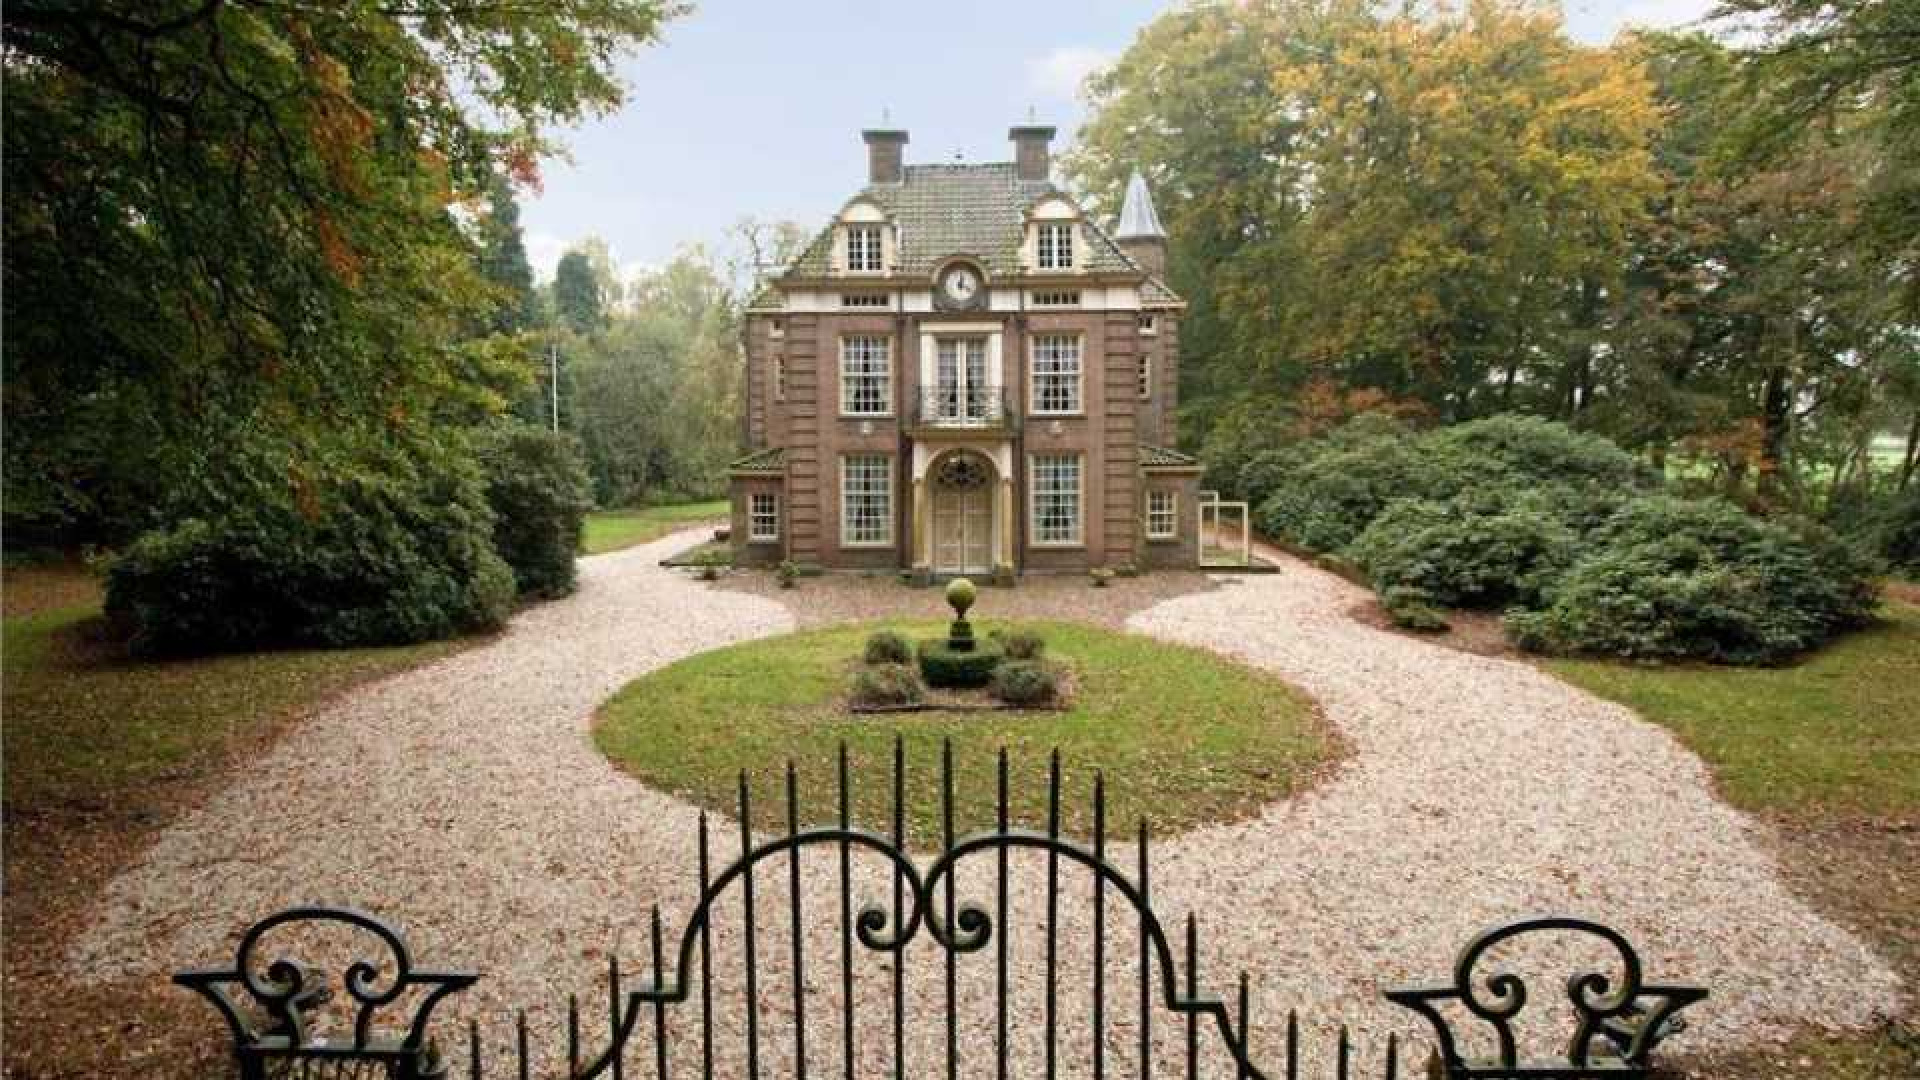 Oud PvdA topman Marcel van Dam verruilt riant landhuis voor eeuwenoud kasteel. Zie foto's 1